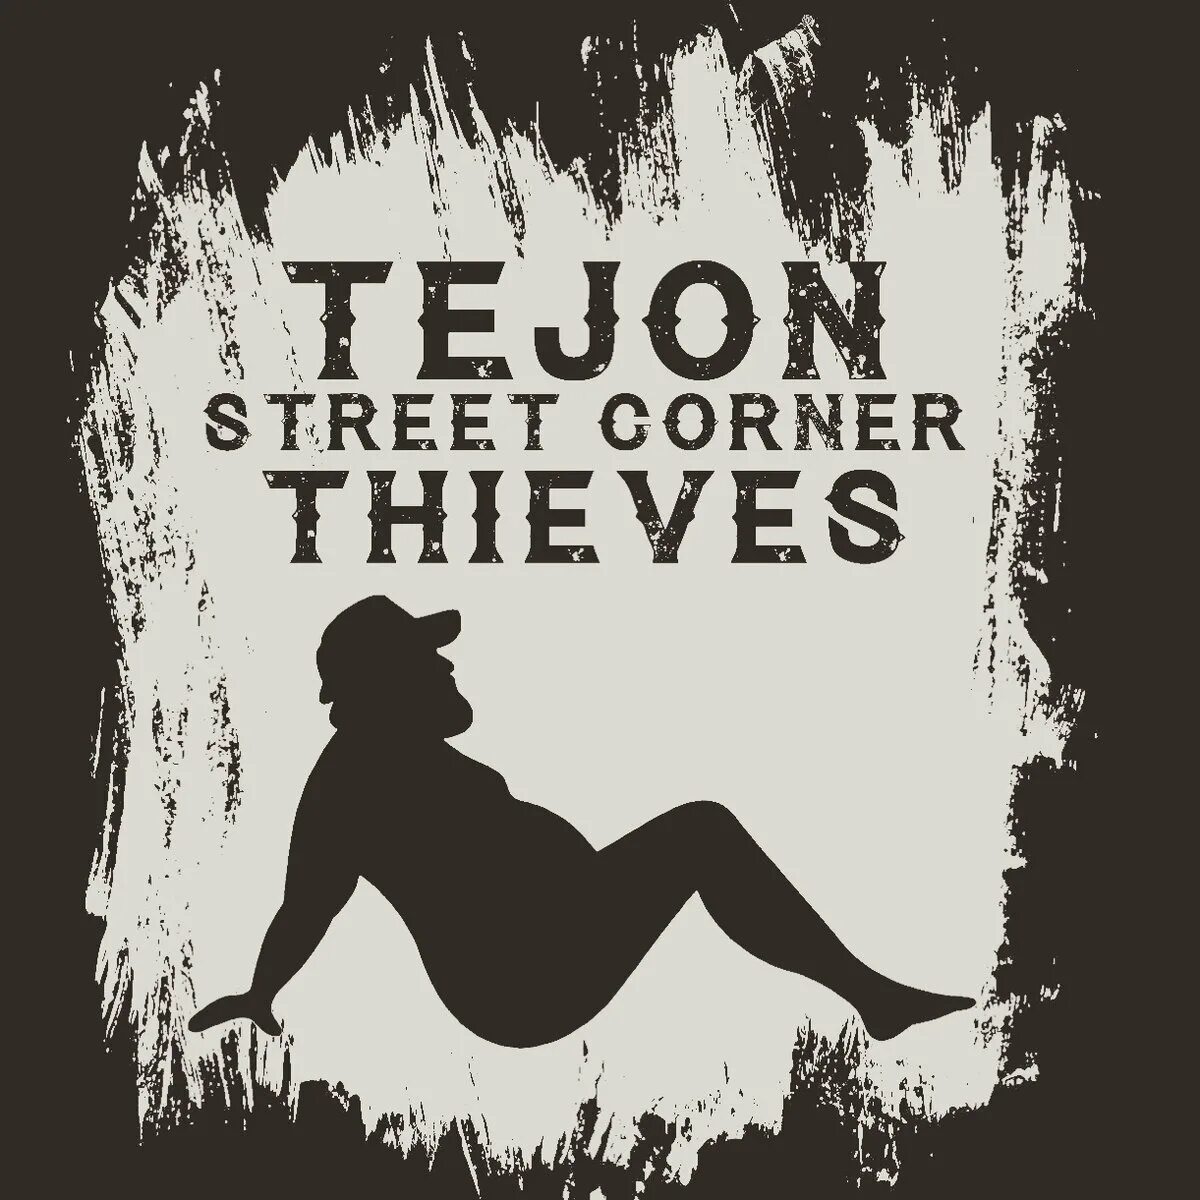 Tejon Street Corner Thieves. Tejon Street Corner Thieves Whiskey. Tejon Street Corner Thieves группа. Tejon Street Corner Thieves кто это. Street corner thieves